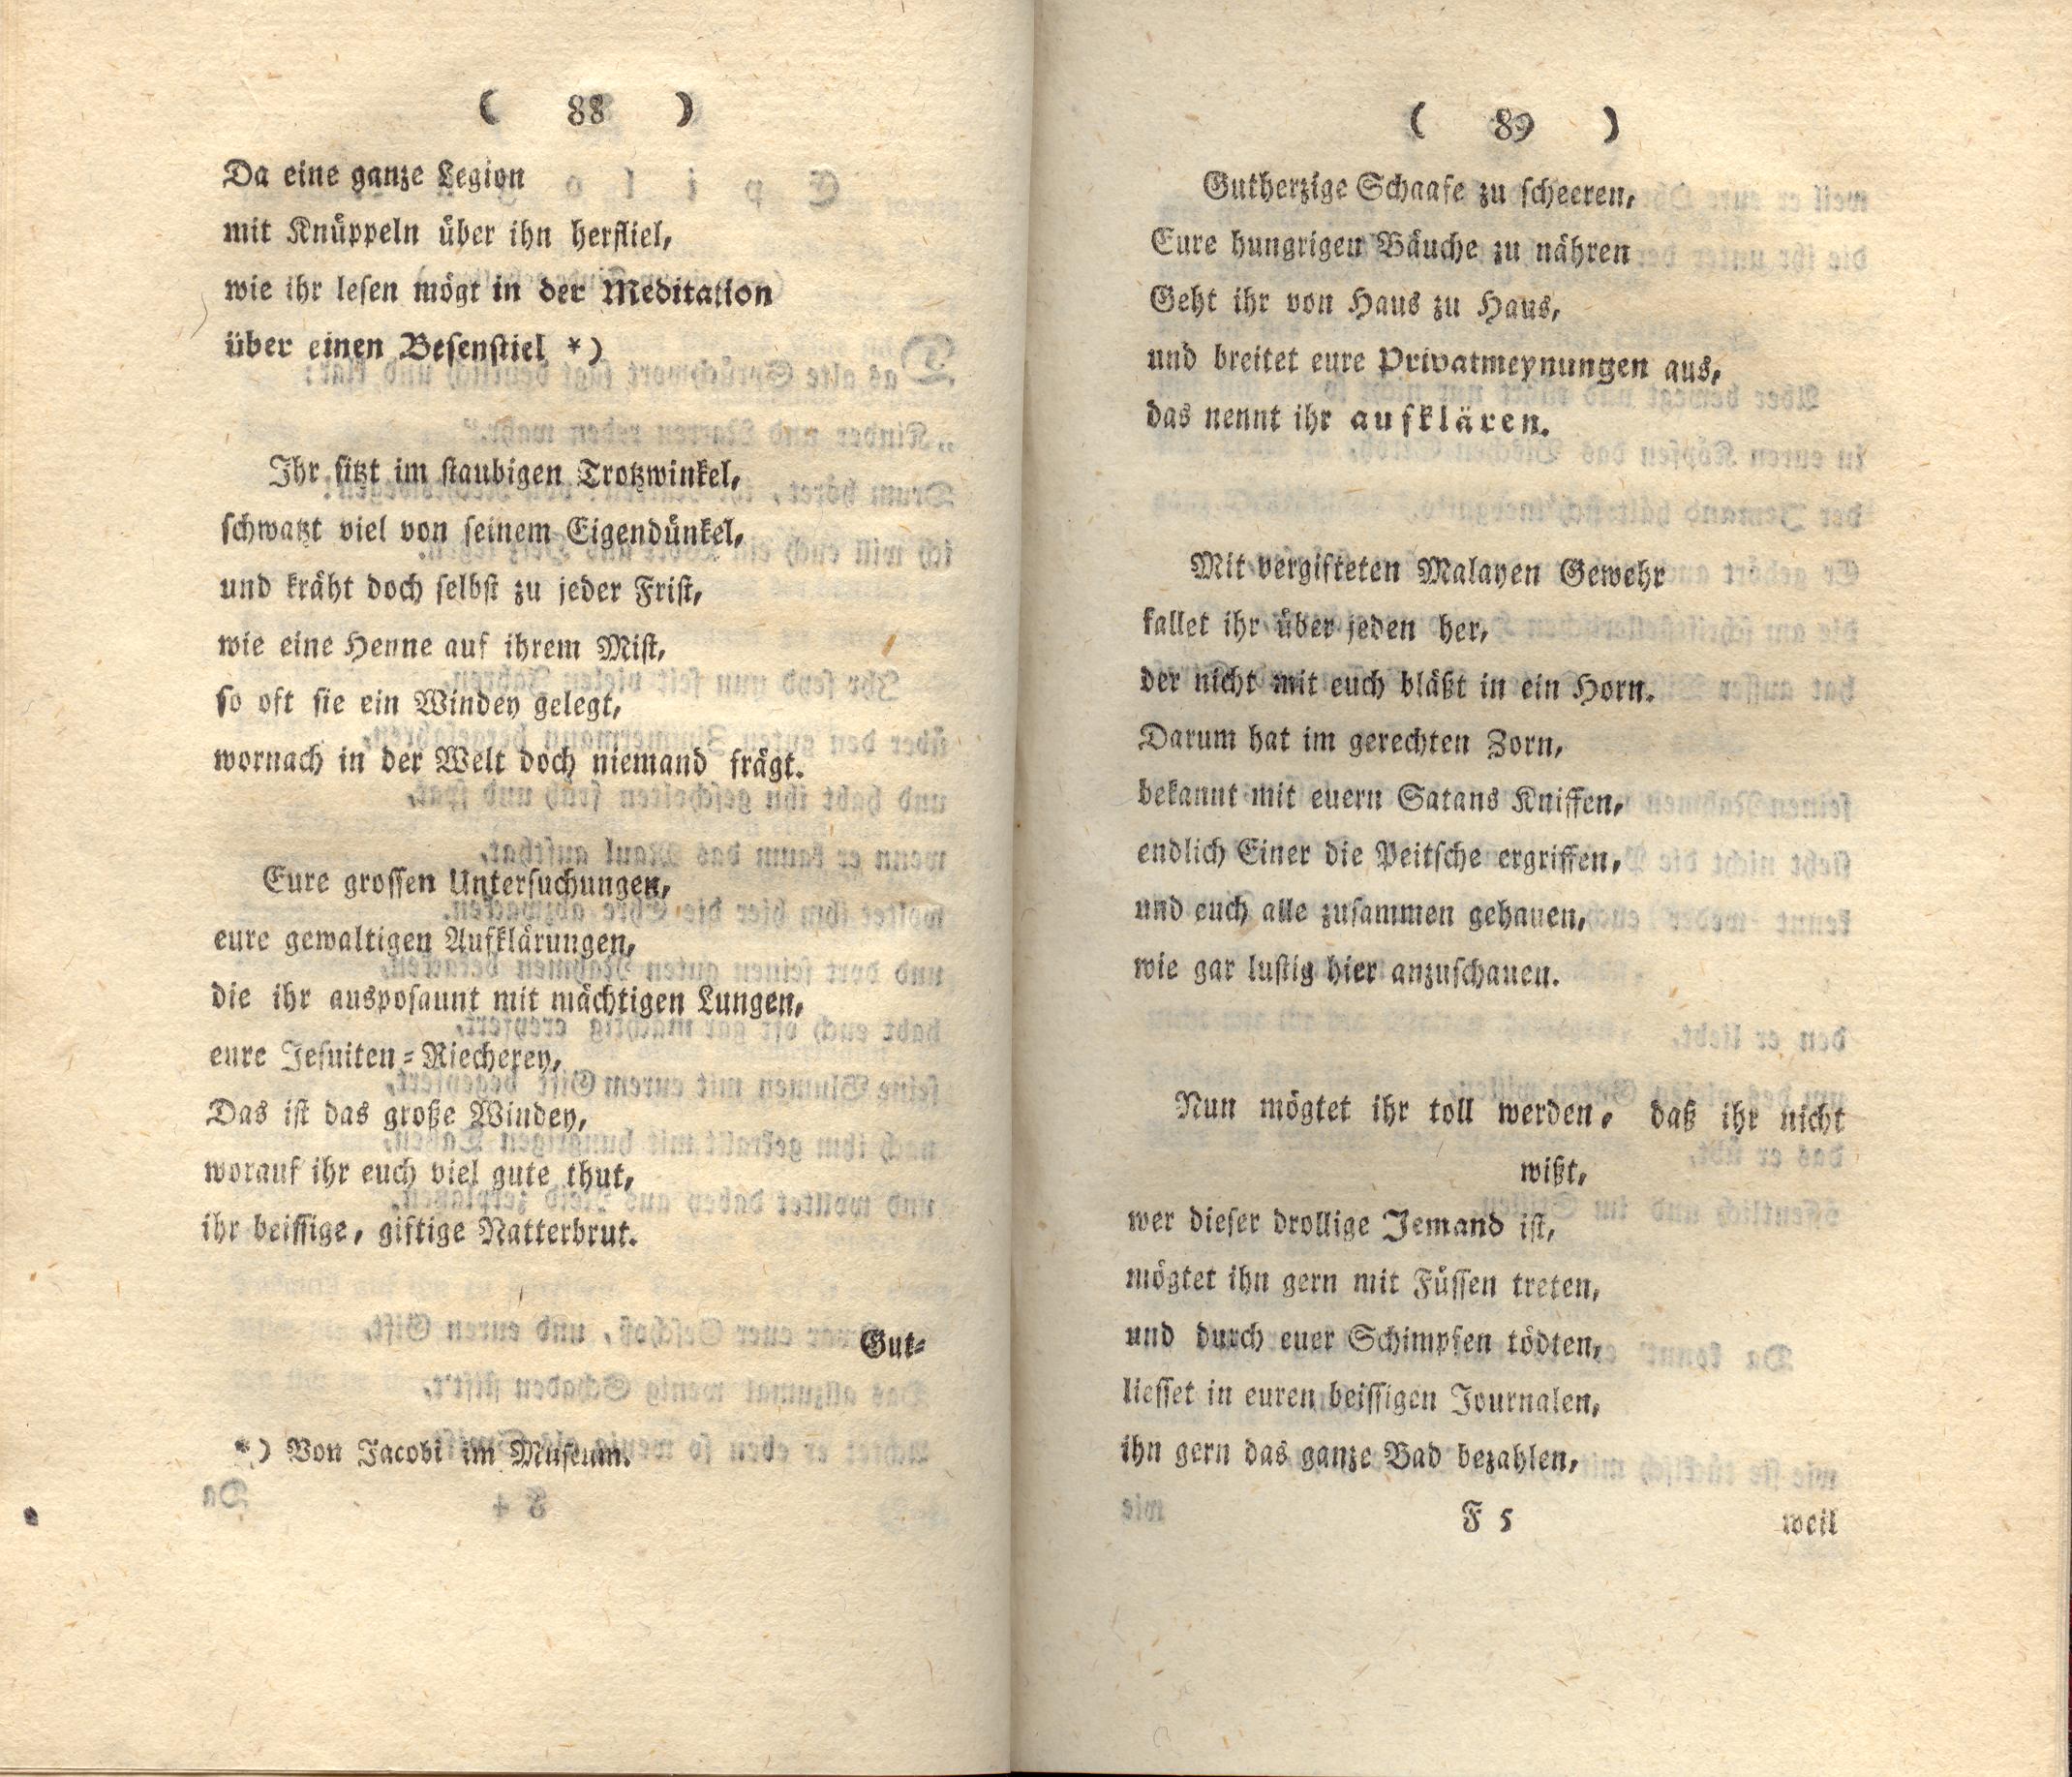 Doctor Bahrdt mit der eisernen Stirn (1790) | 46. (88-89) Main body of text